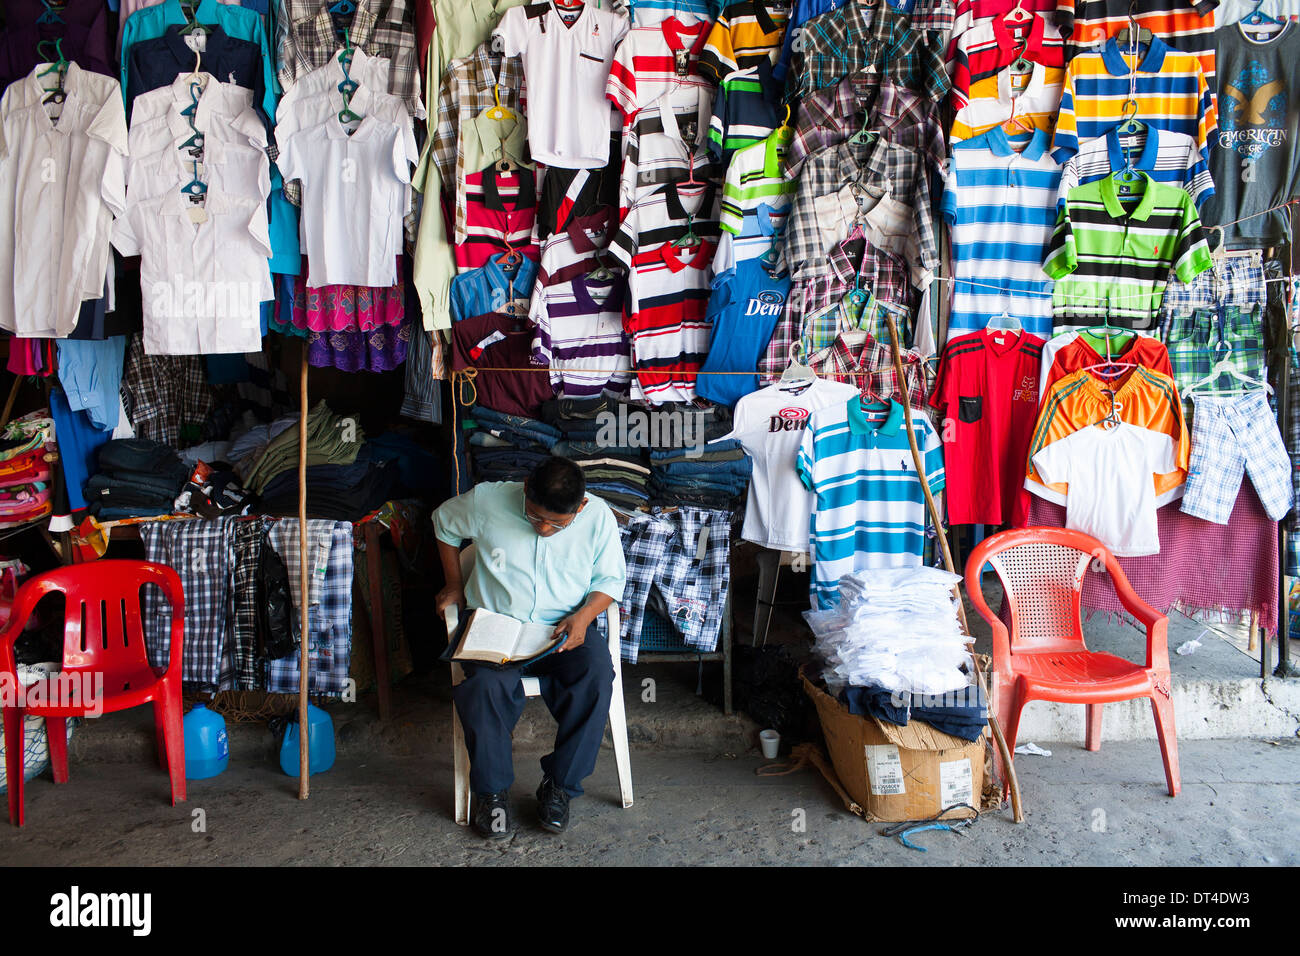 Un hombre lee un periódico sentado esperando para vender ropa en un puesto en el departamento de La Libertad, una ciudad portuaria en la costa de El Salvador Fotografía de -